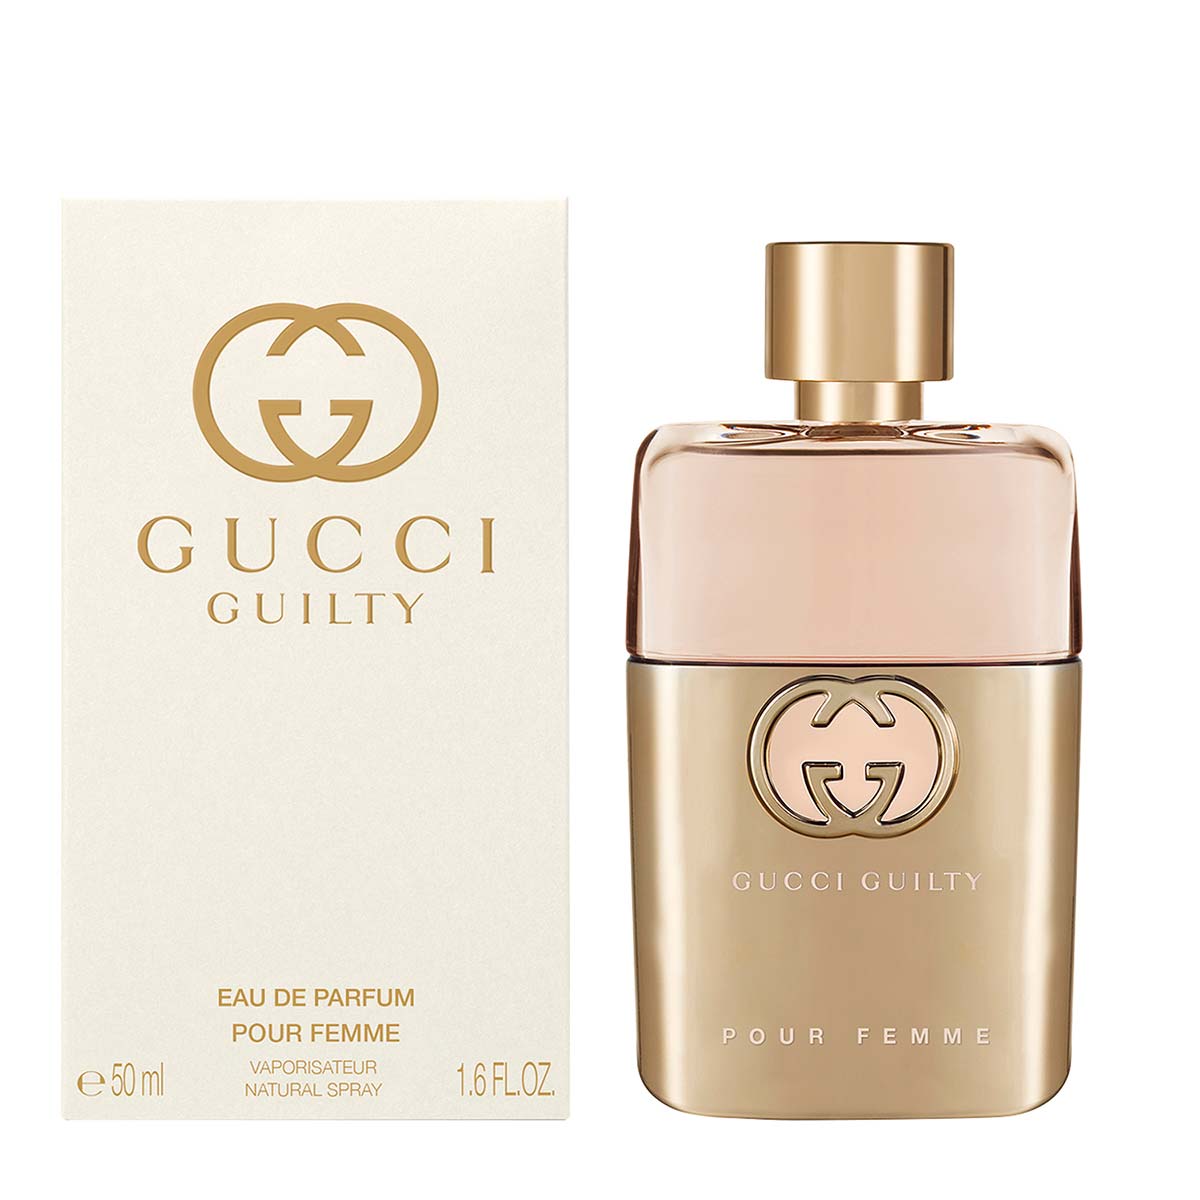 Gucci Guilty Eau de Parfum for Her